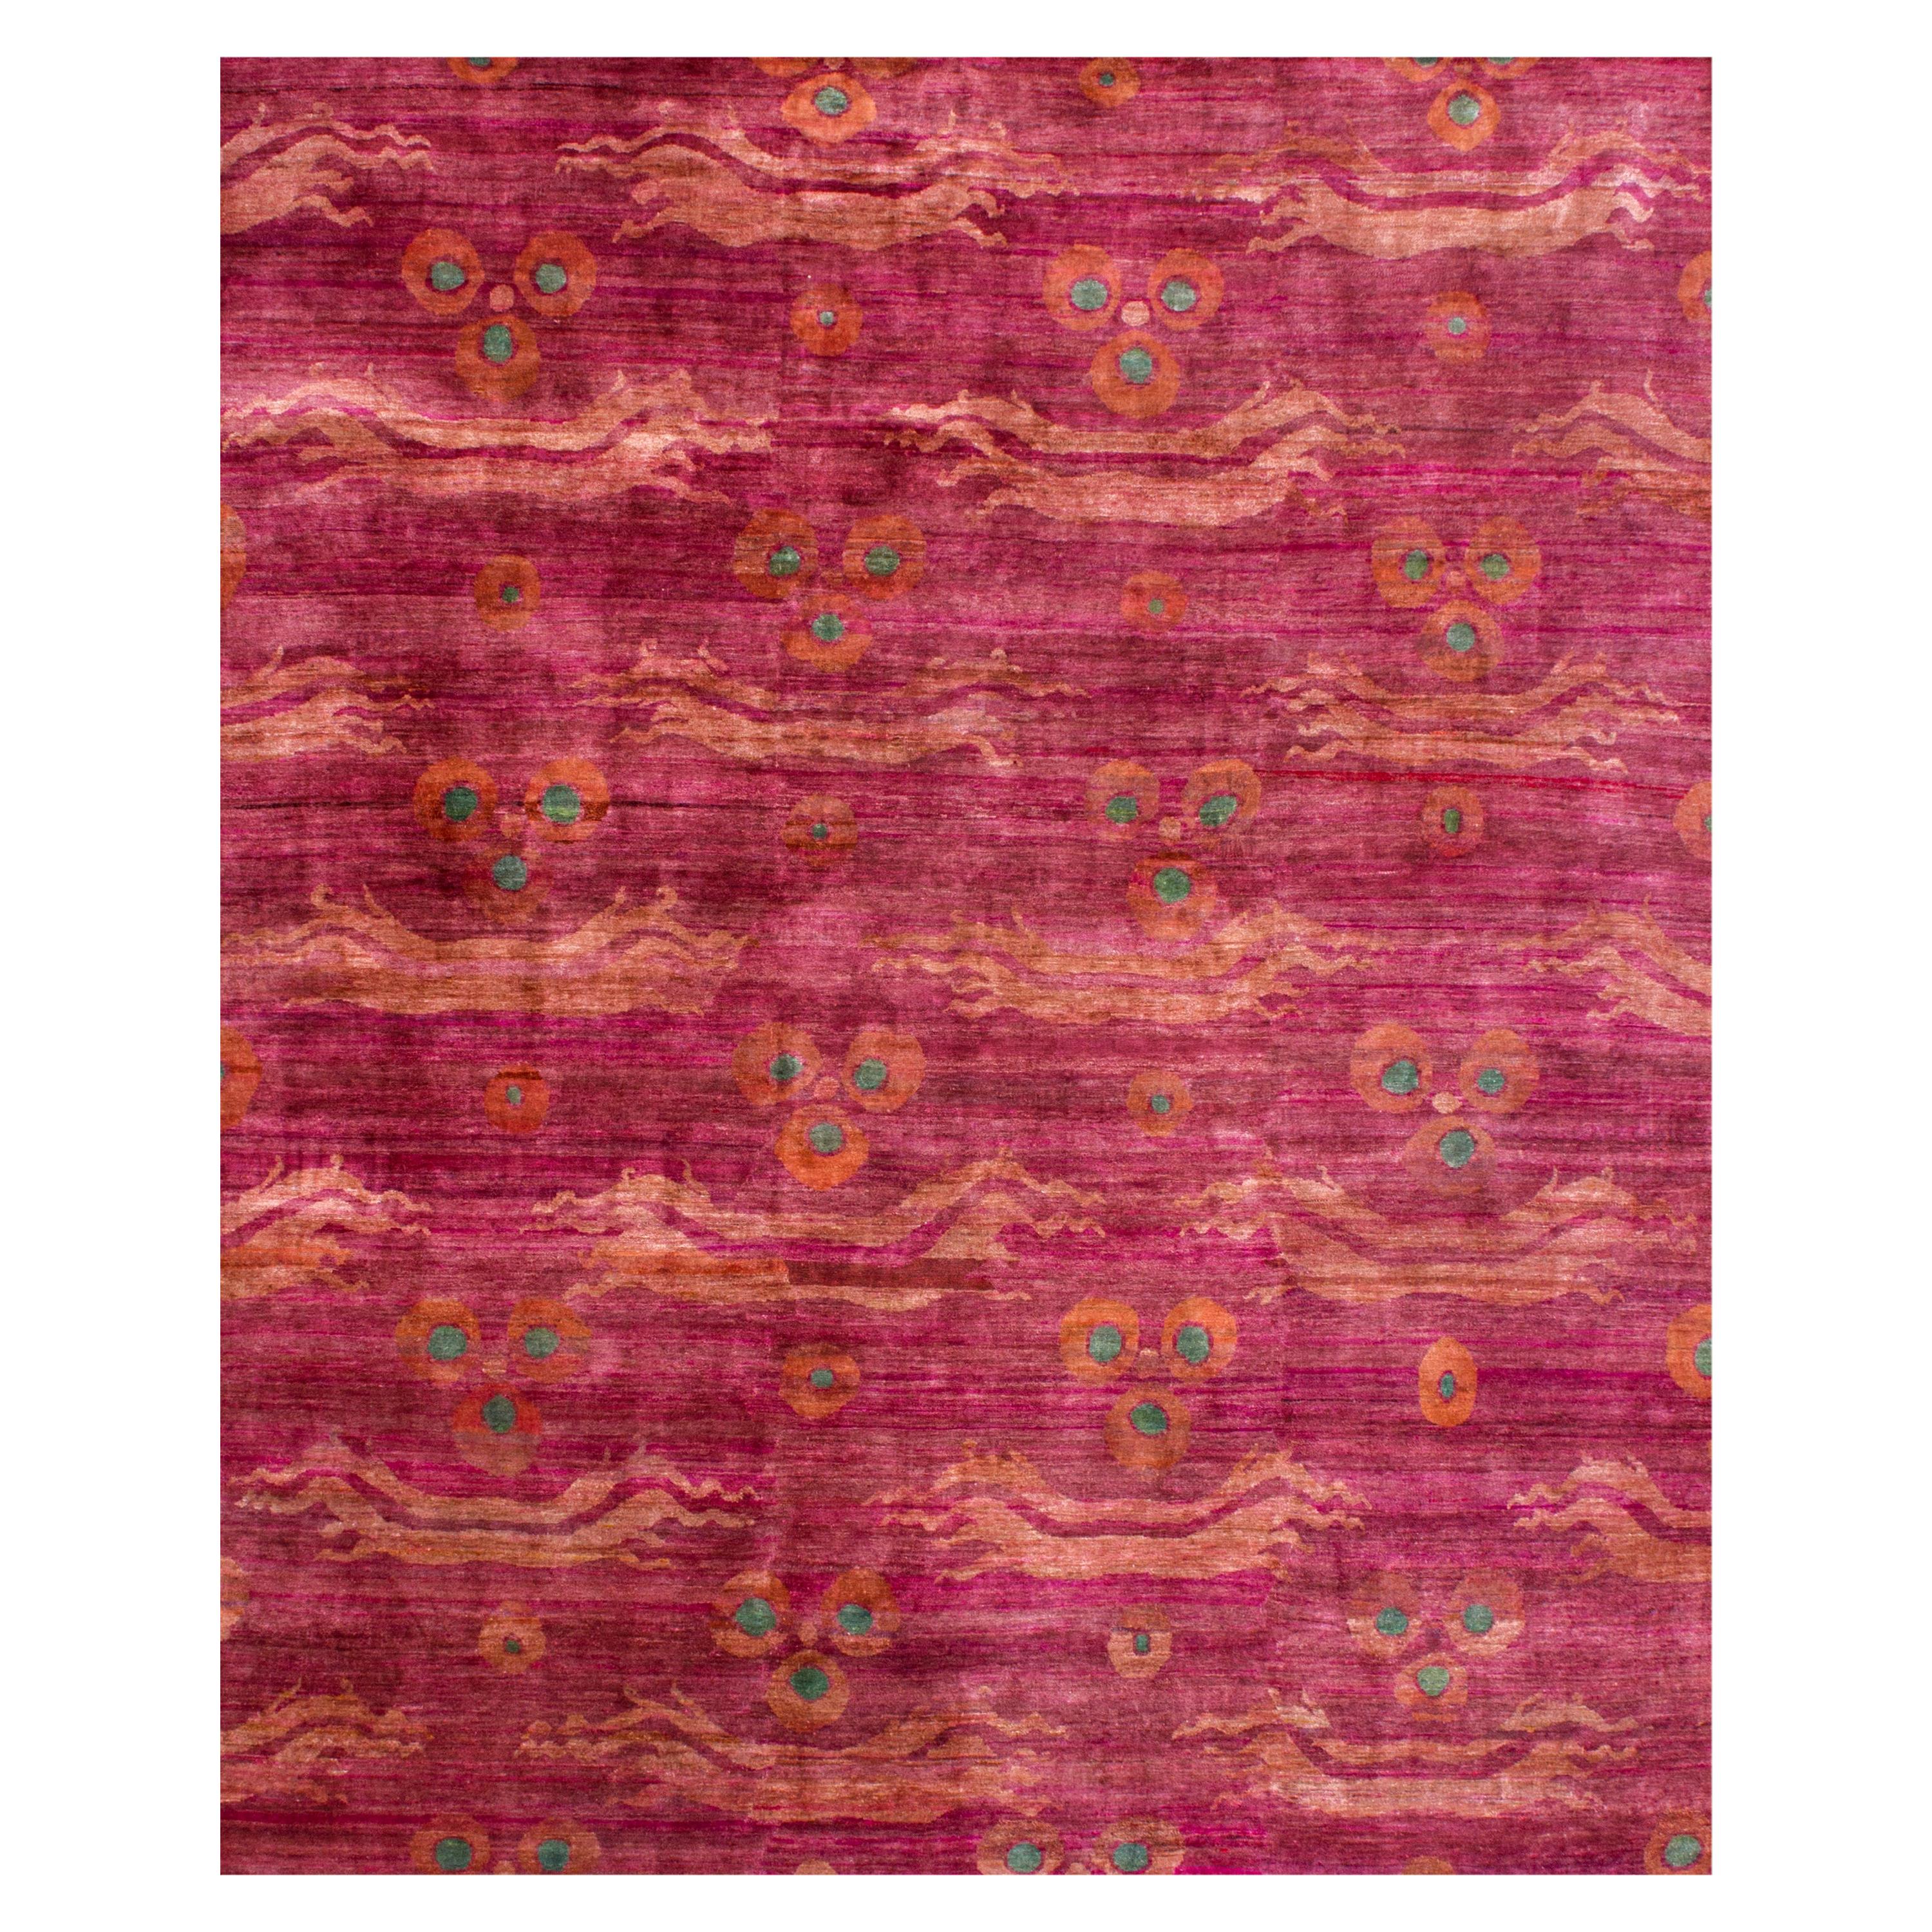 Maßgefertigter handgeknüpfter Teppich aus Wolle und Naturseide in Fuchsia und Rosa